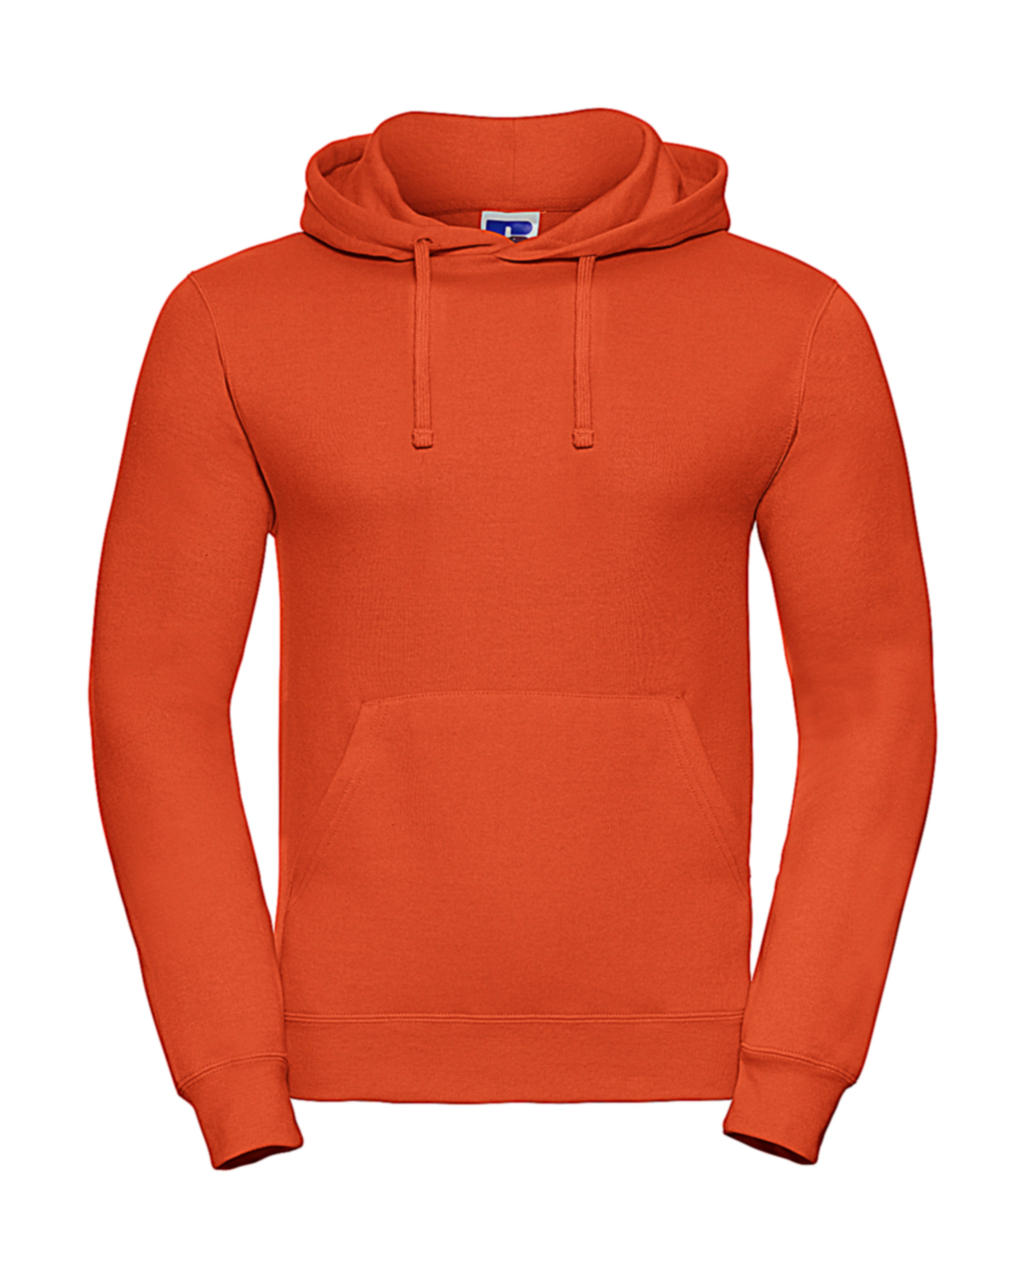  Hooded Sweatshirt in Farbe Orange